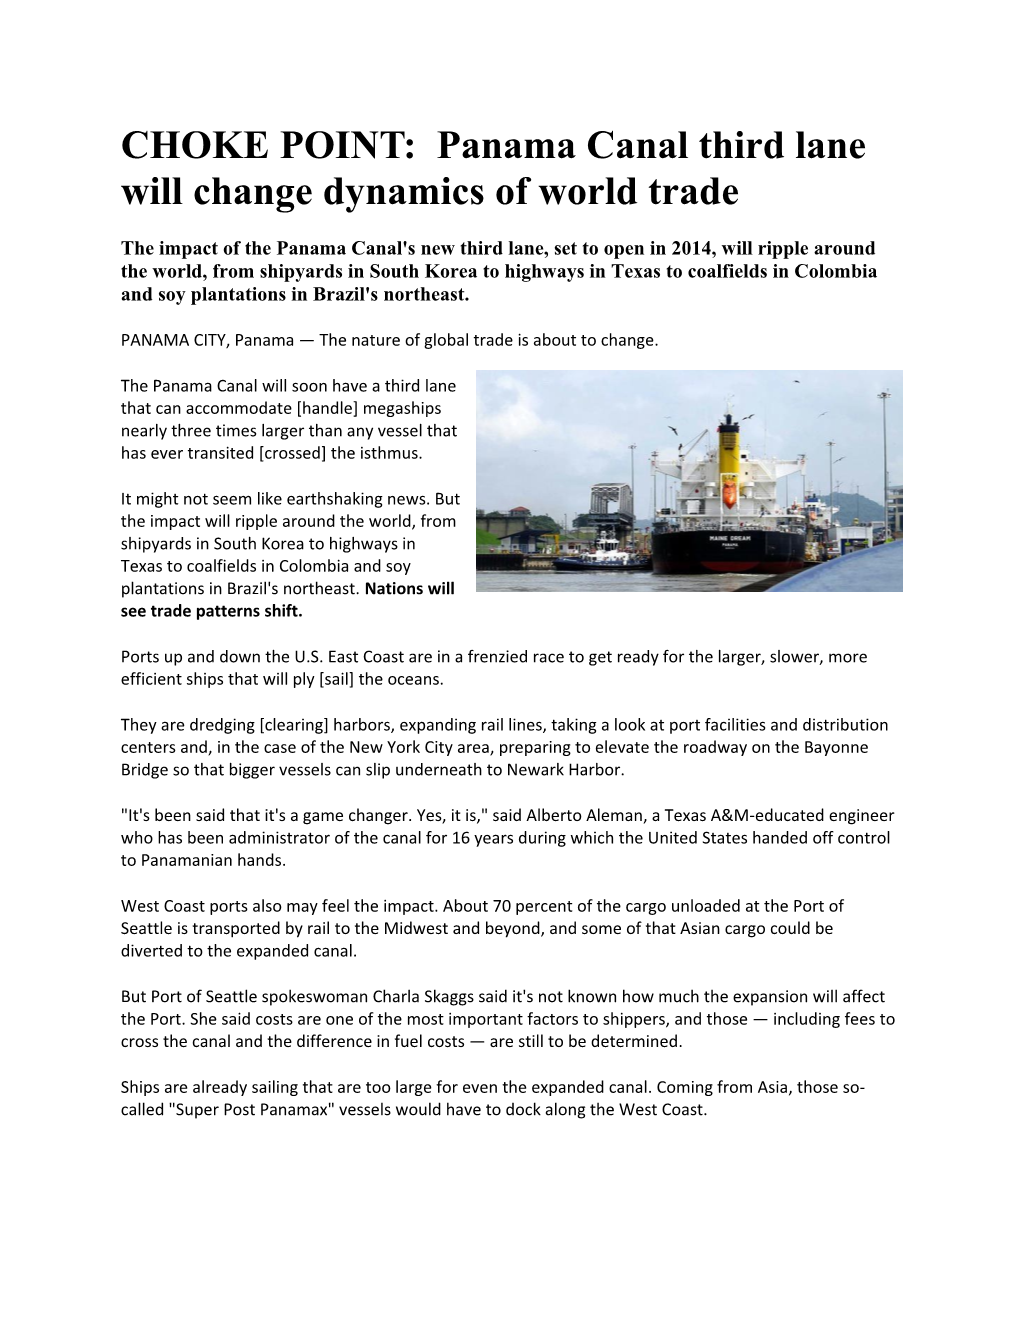 CHOKE POINT: Panama Canal Third Lane Will Change Dynamics of World Trade